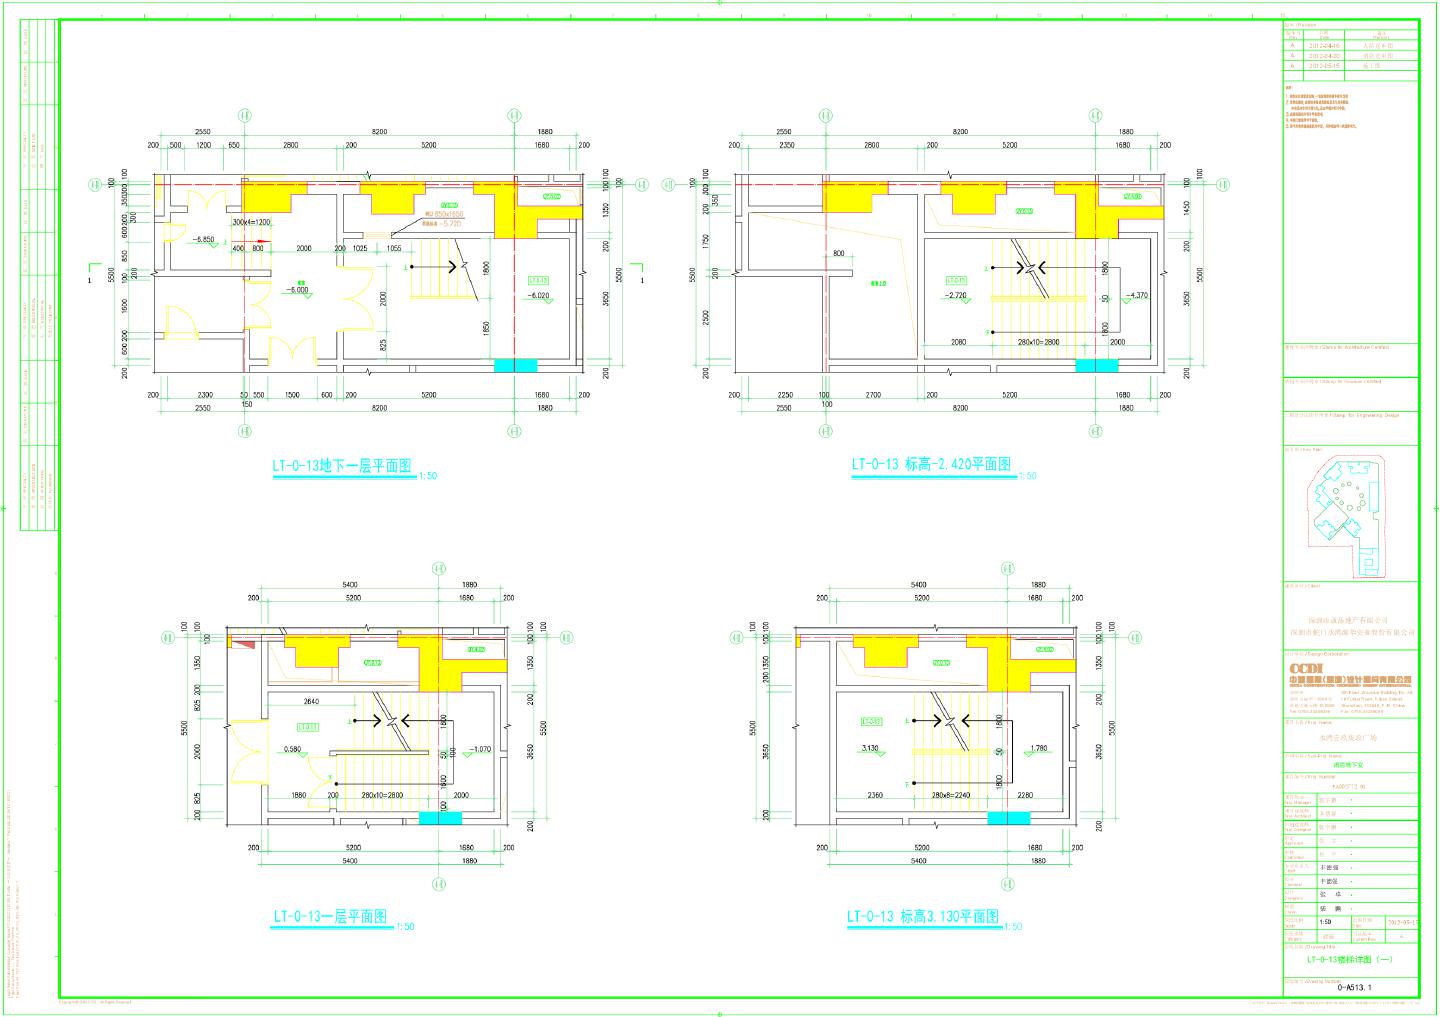 水湾壹玖柒玖广场裙房地下室-LT-0-13楼梯详图CAD图